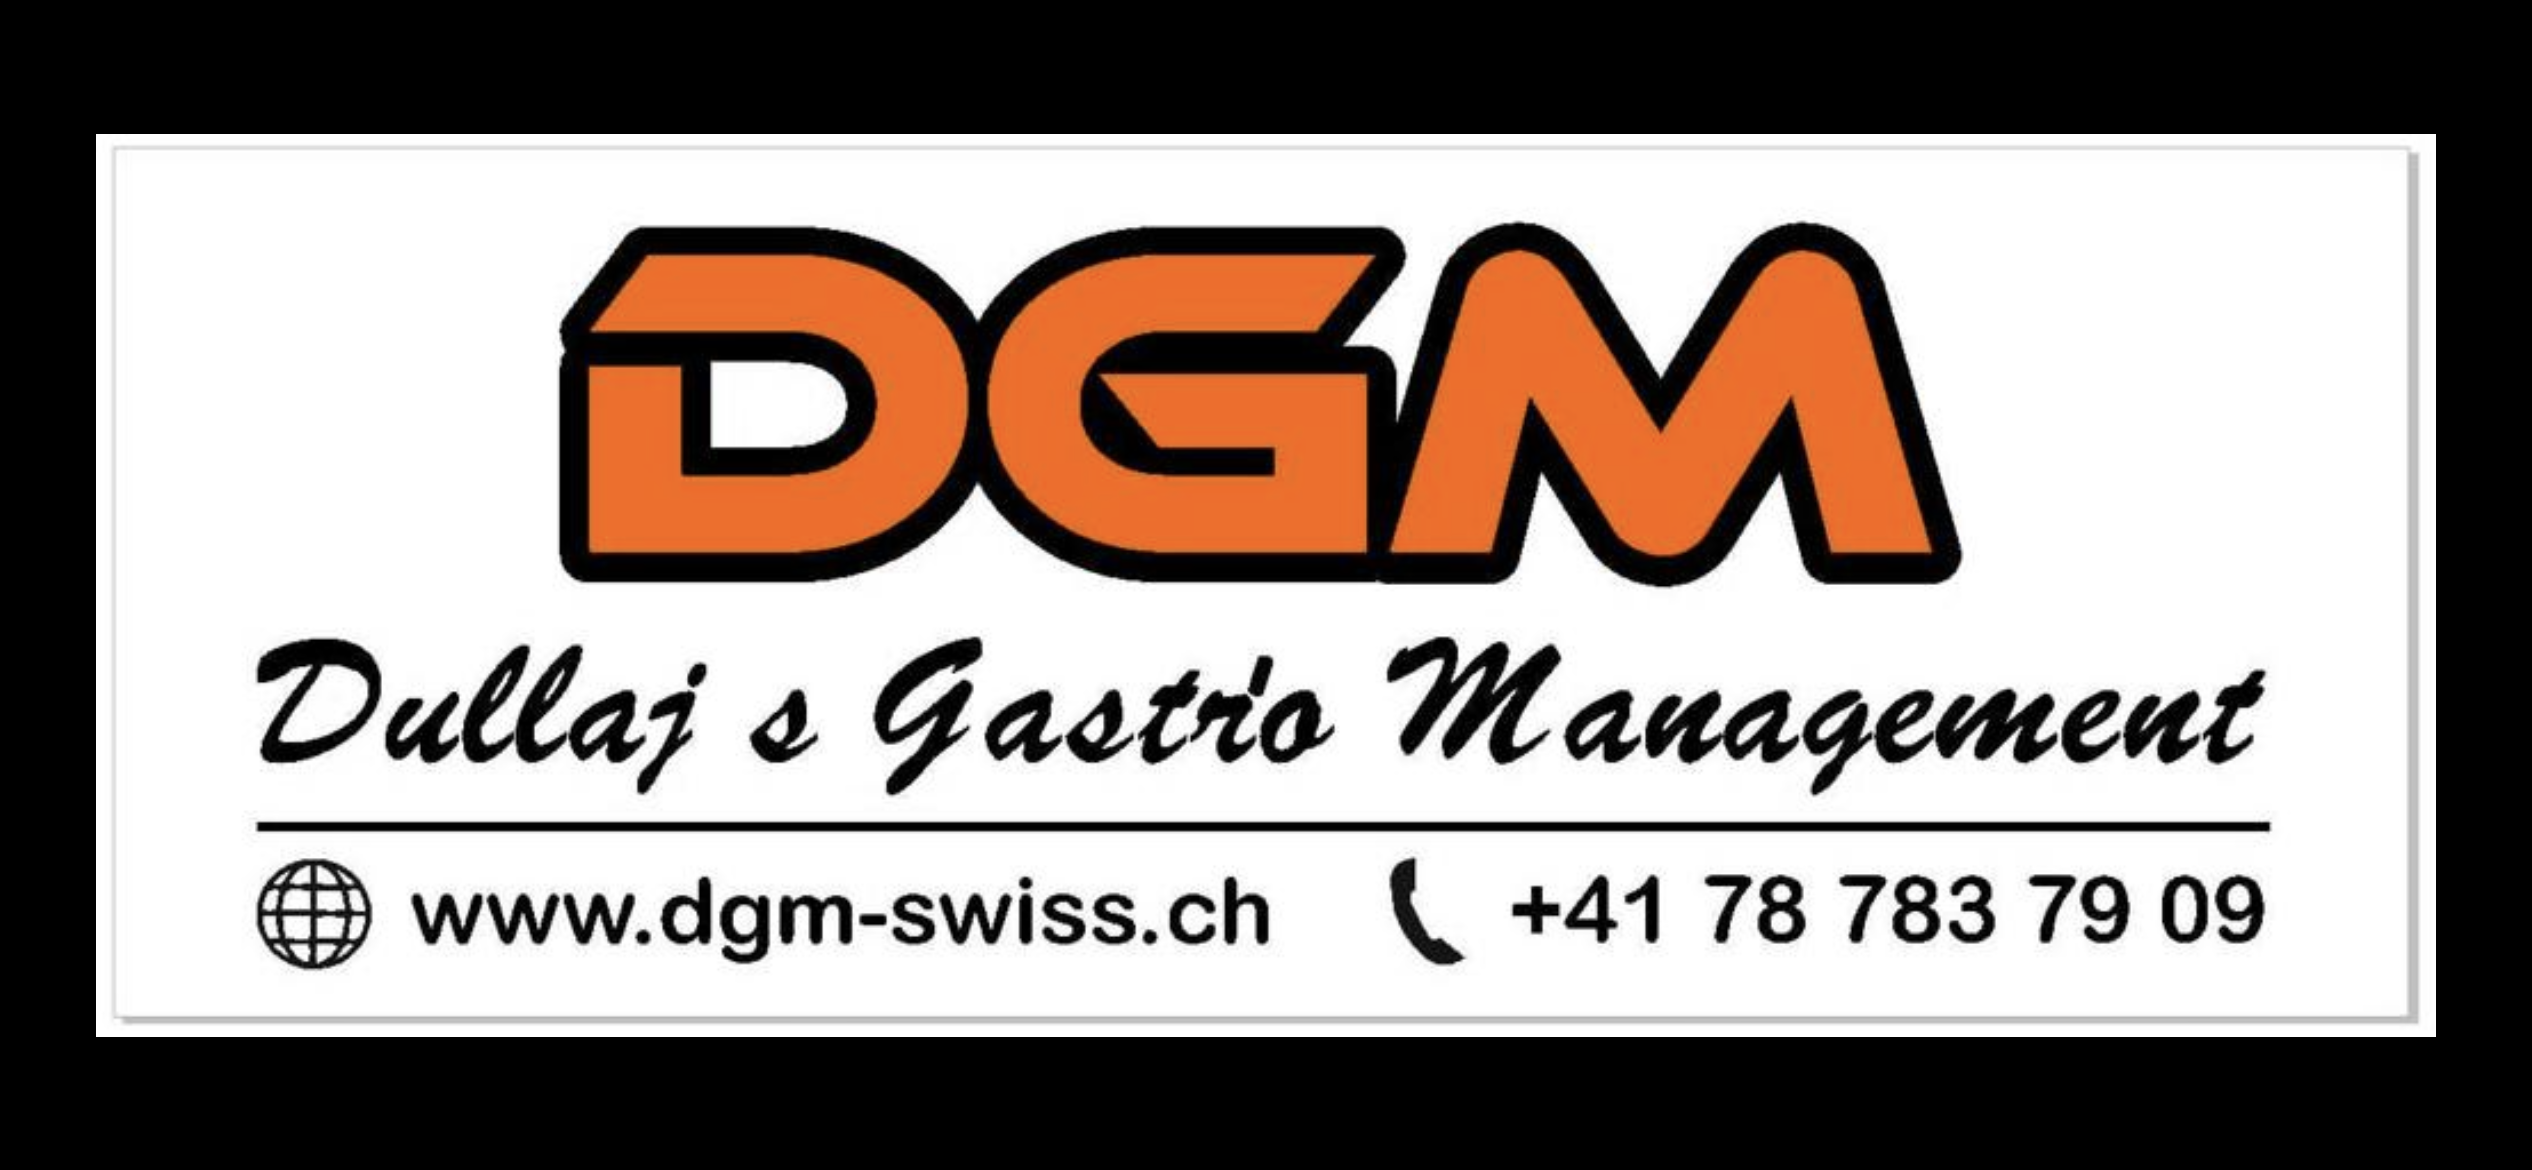 dgm-dullaj-gastro-management